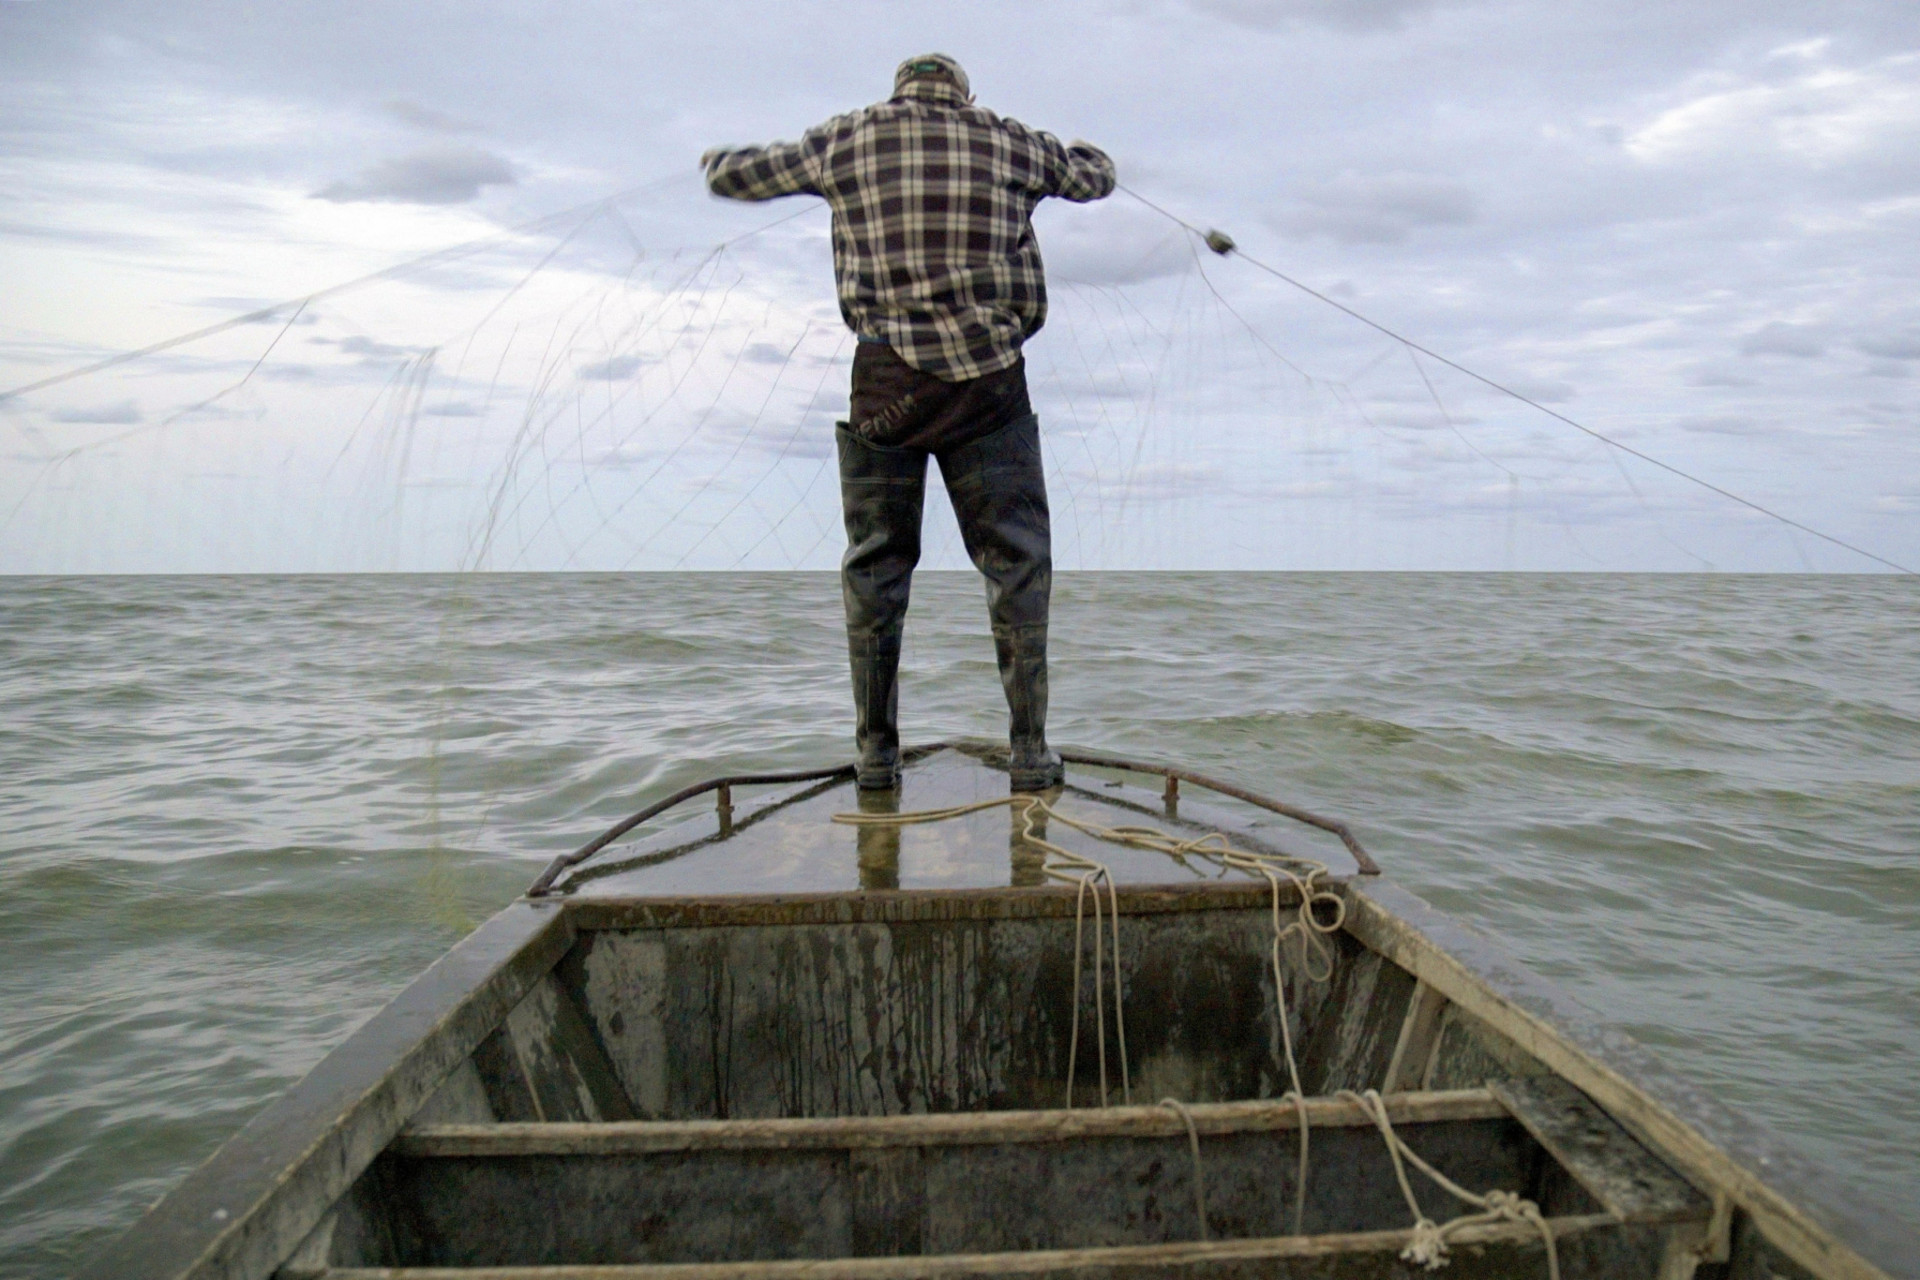 Iwan auf dem Boot mit dem Fischernetz "Ostrov – Die verlorene Insel"); Copyright: ZDF/SRF